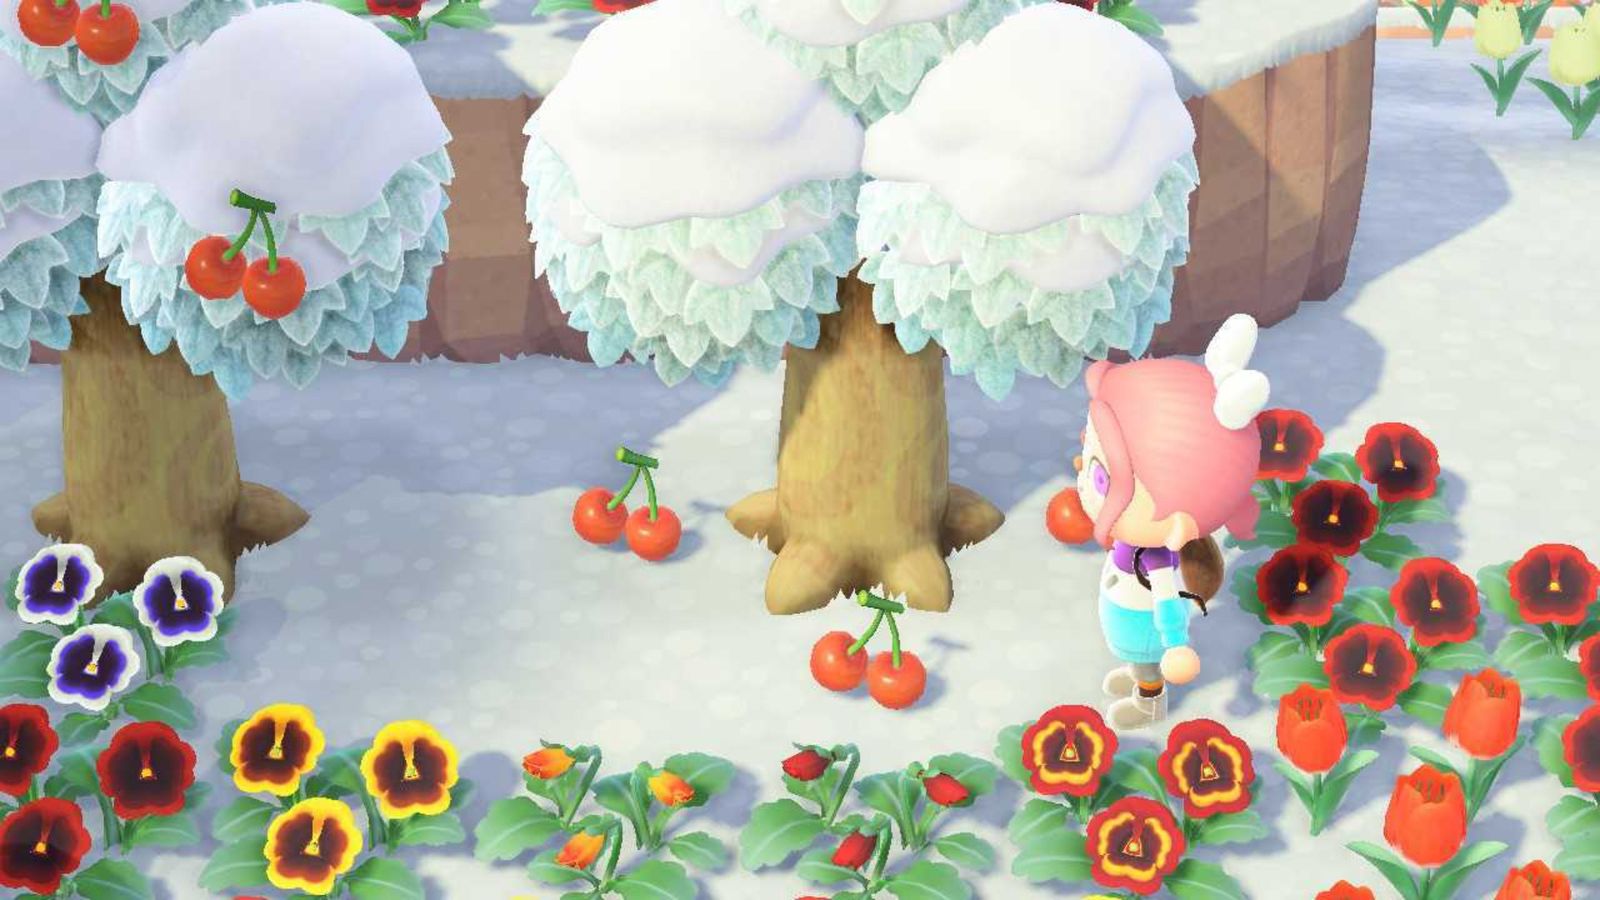 Animal Crossing New Horizons Cherries on the ground